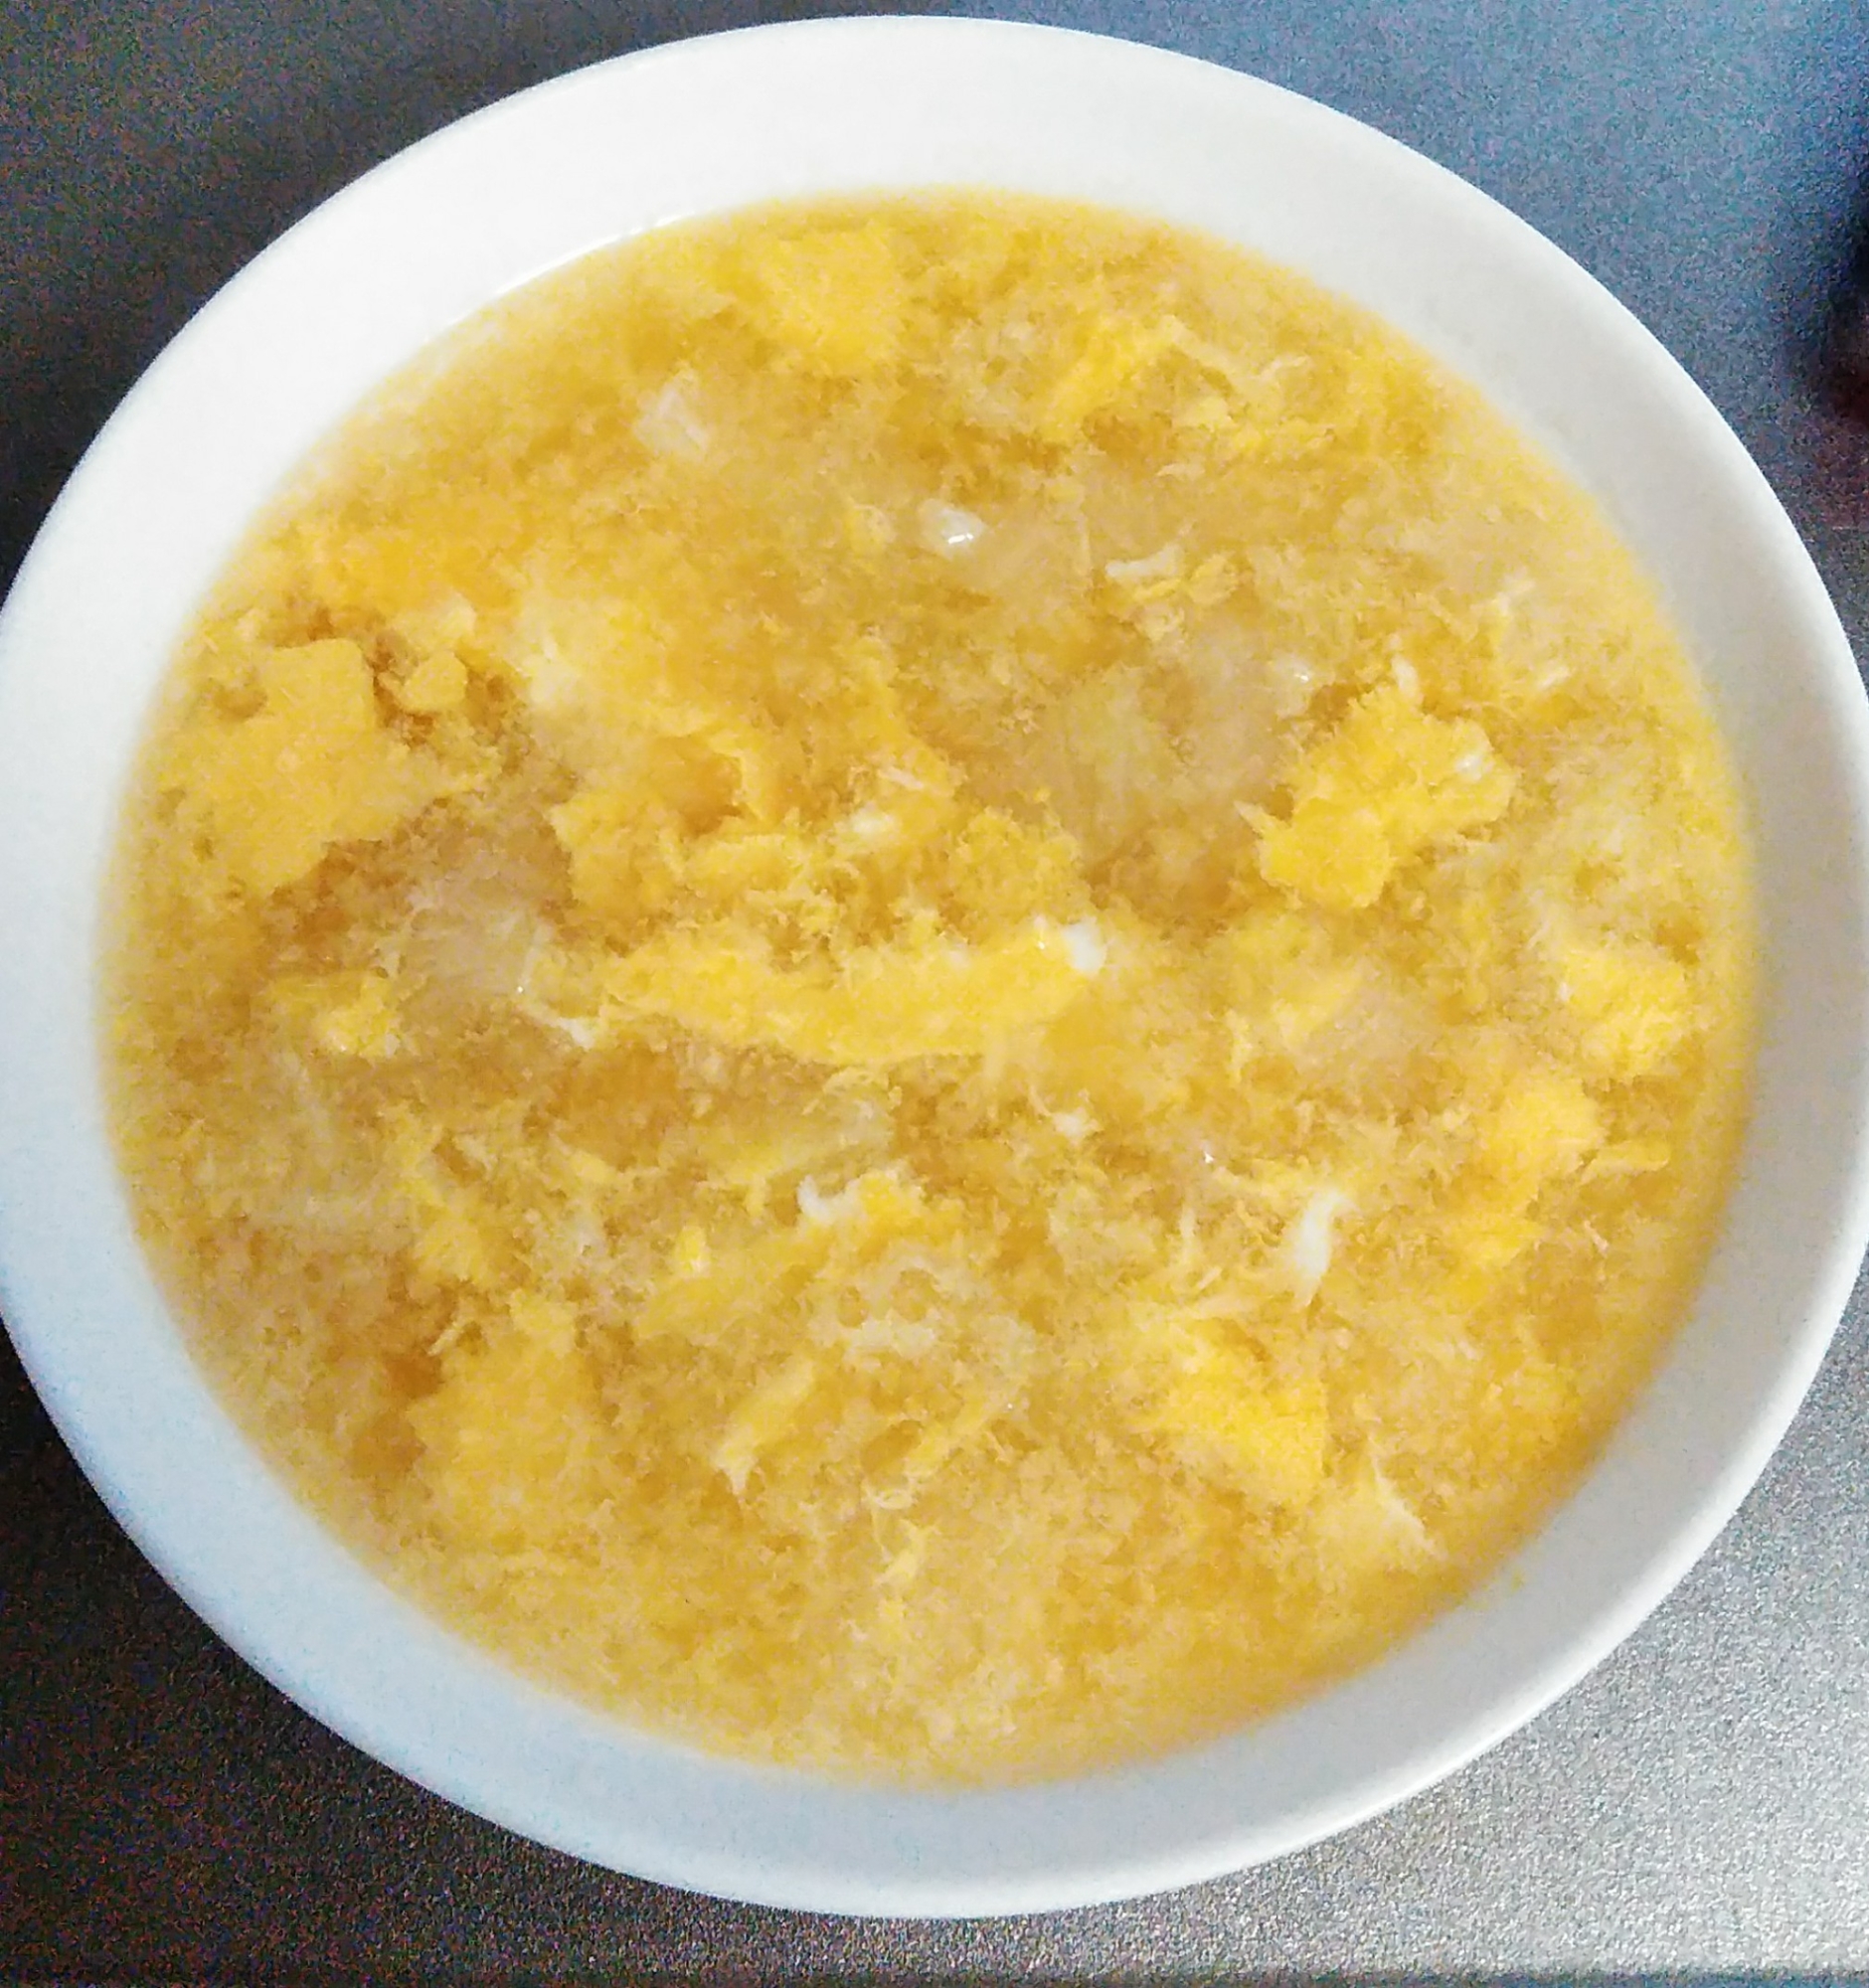 白菜と卵のコンソメスープ